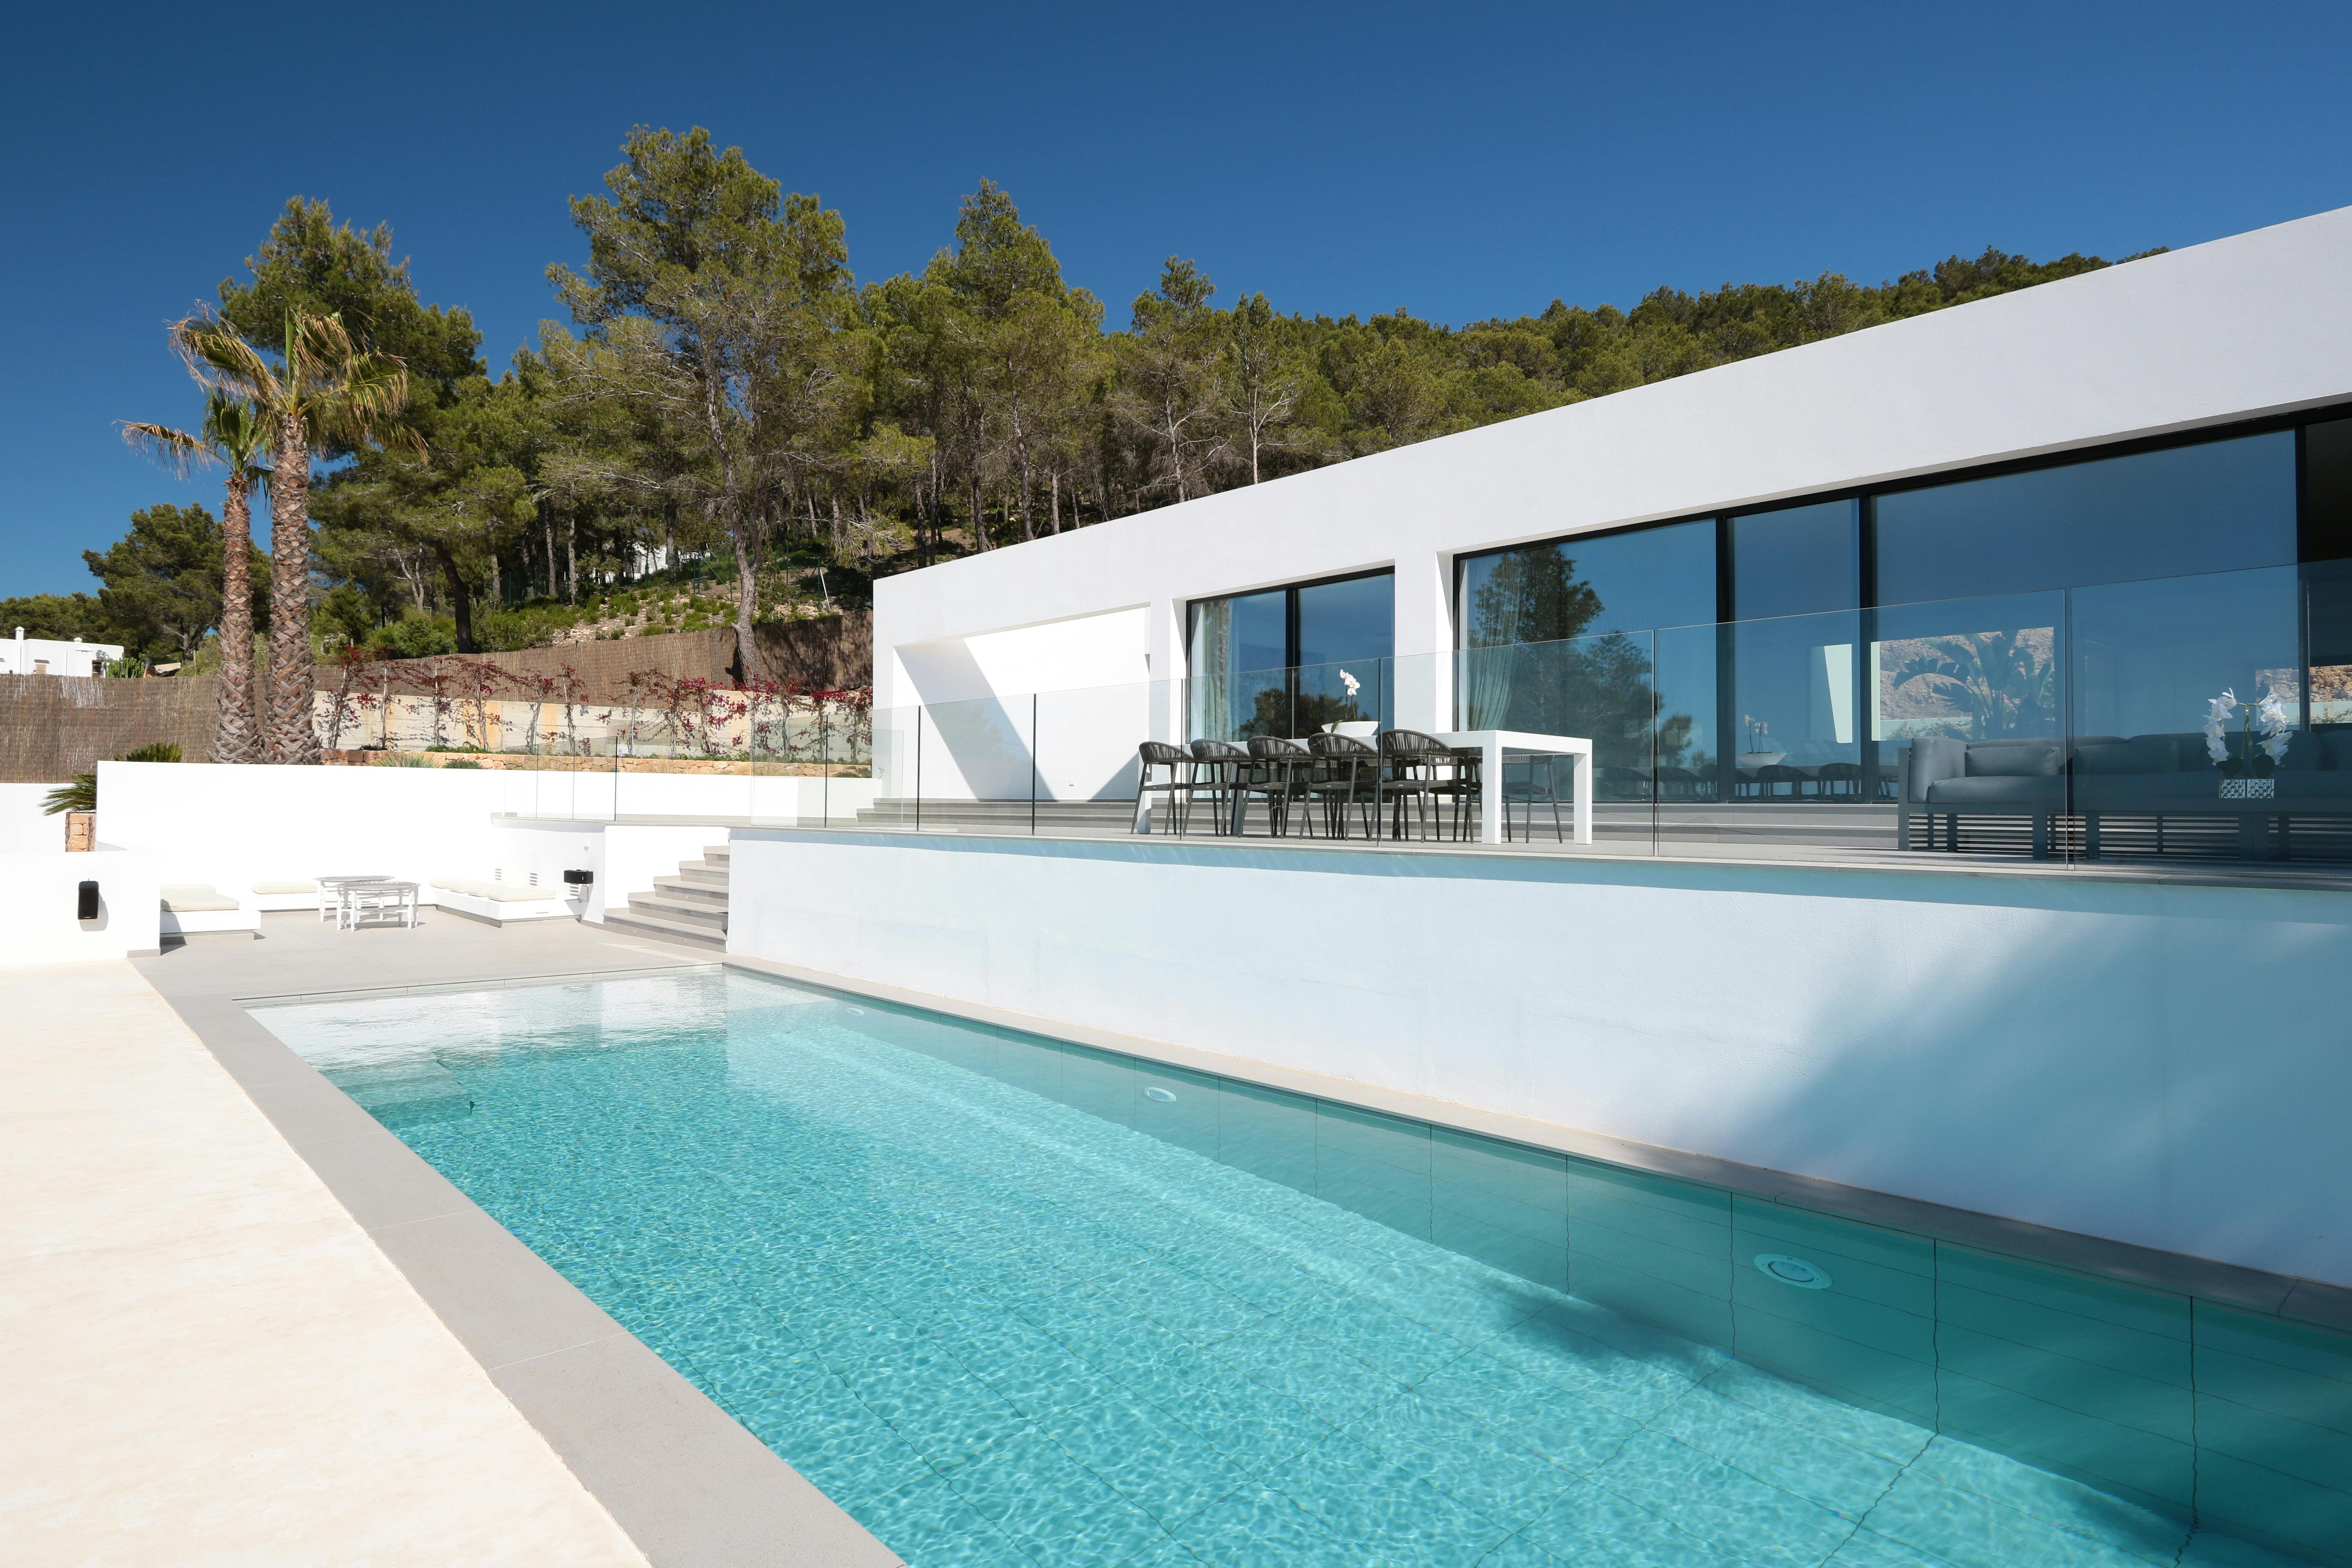 Numero immagine 38 della sezione corrente di Case Study Villa Omnia a Ibiza realizzata con DKTN® e Silestone® by Cosentino di Cosentino Italia